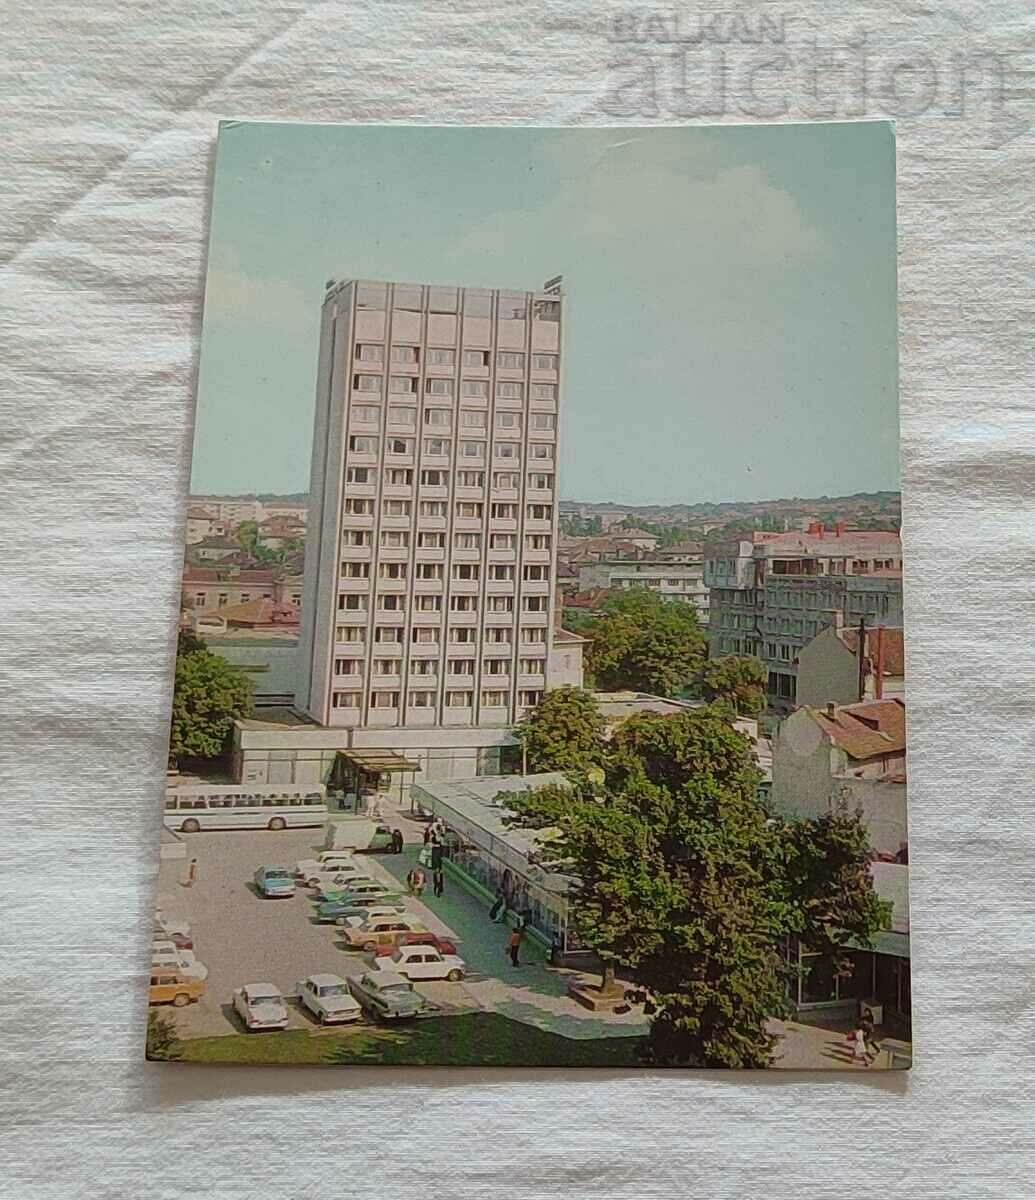 PLEVEN HOTEL "ROSTOV ON DON" P.K. 1979